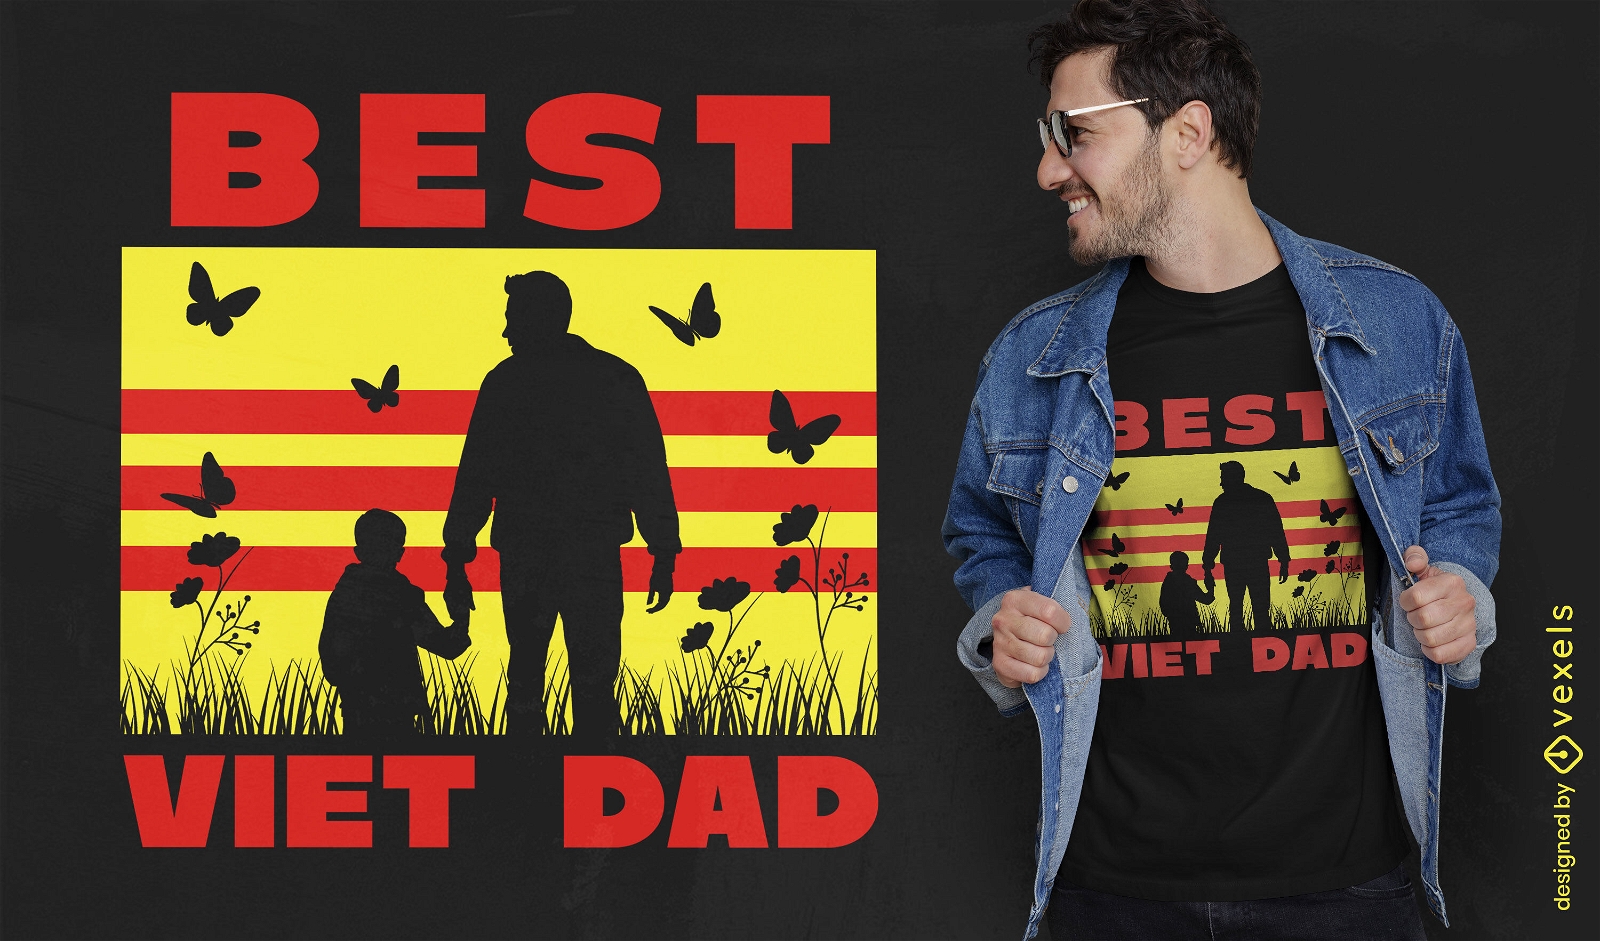 PEDIDO Melhor design de camiseta para pai